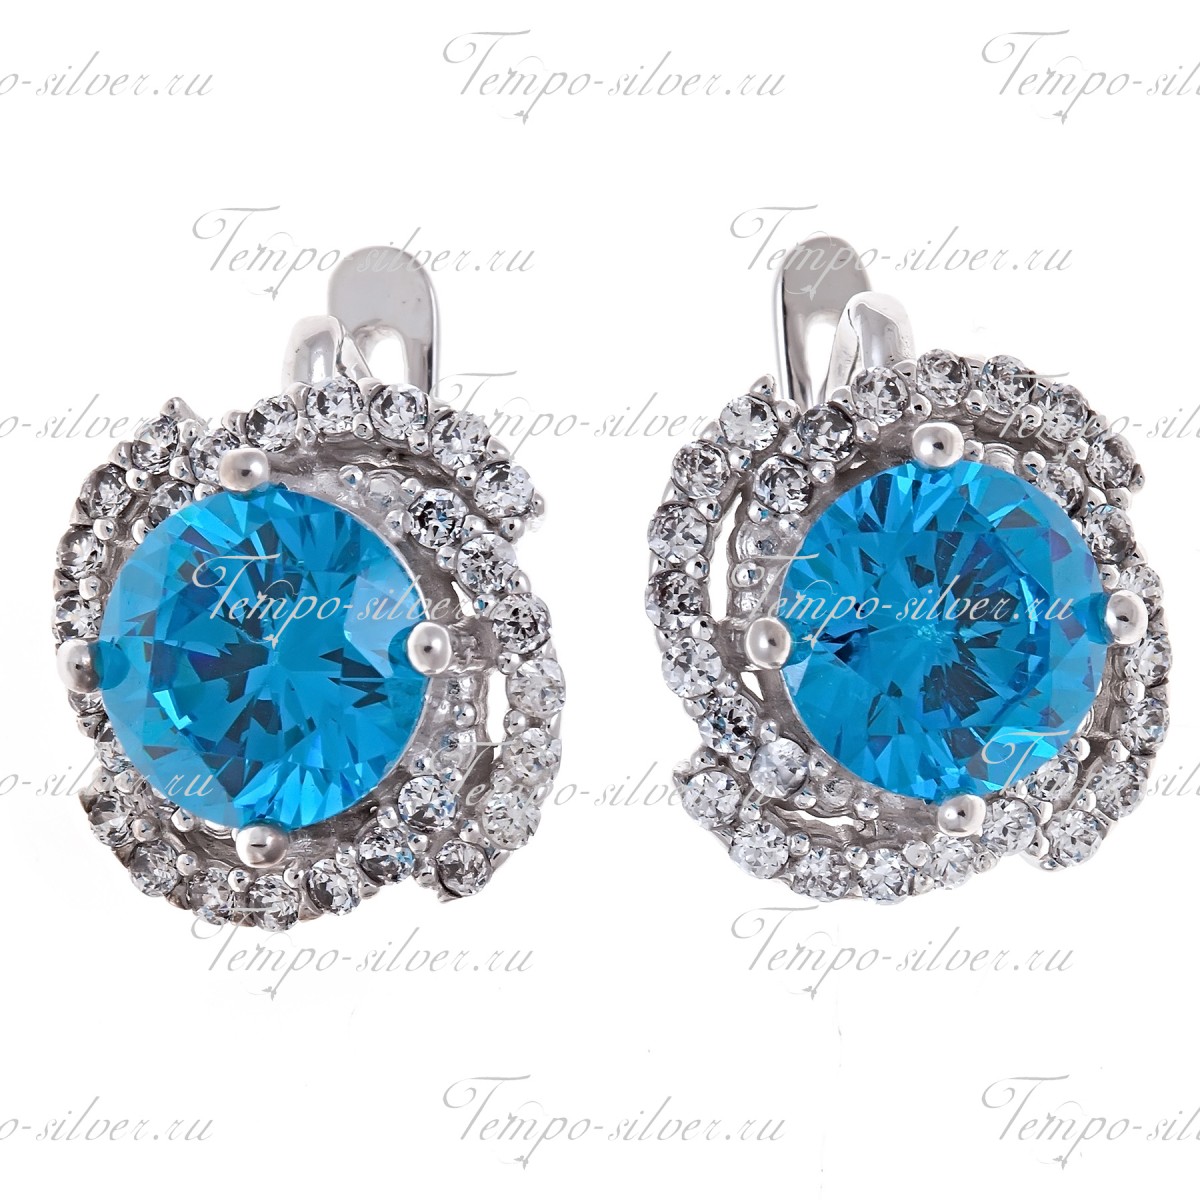 Серьги из серебра с крупным голубым камнем в центре композиции в форме цветка 